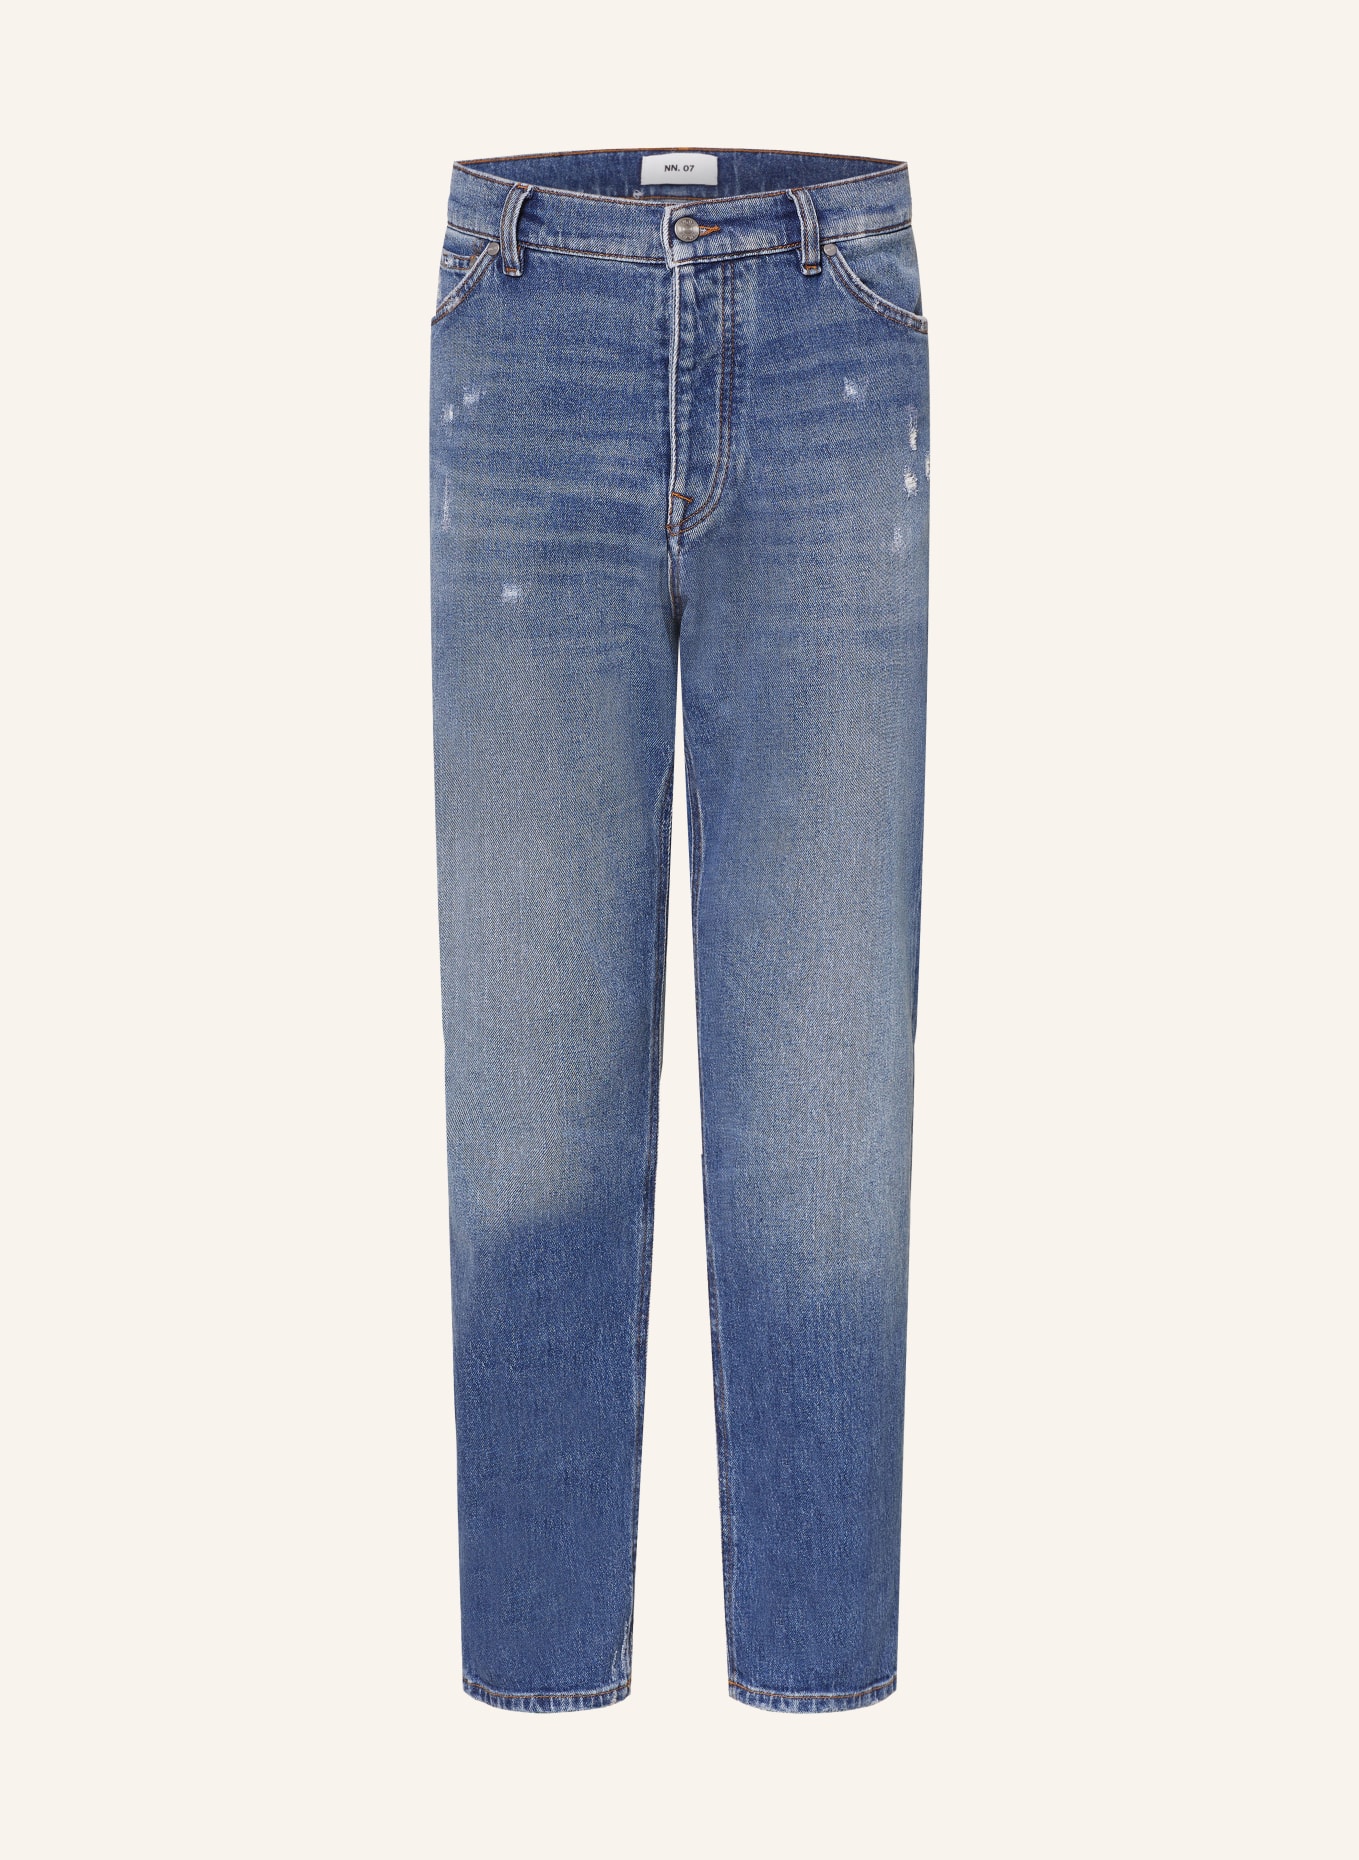 NN.07 Jeans FREY Tapered Fit, Farbe: 235 Mid Blue (Bild 1)